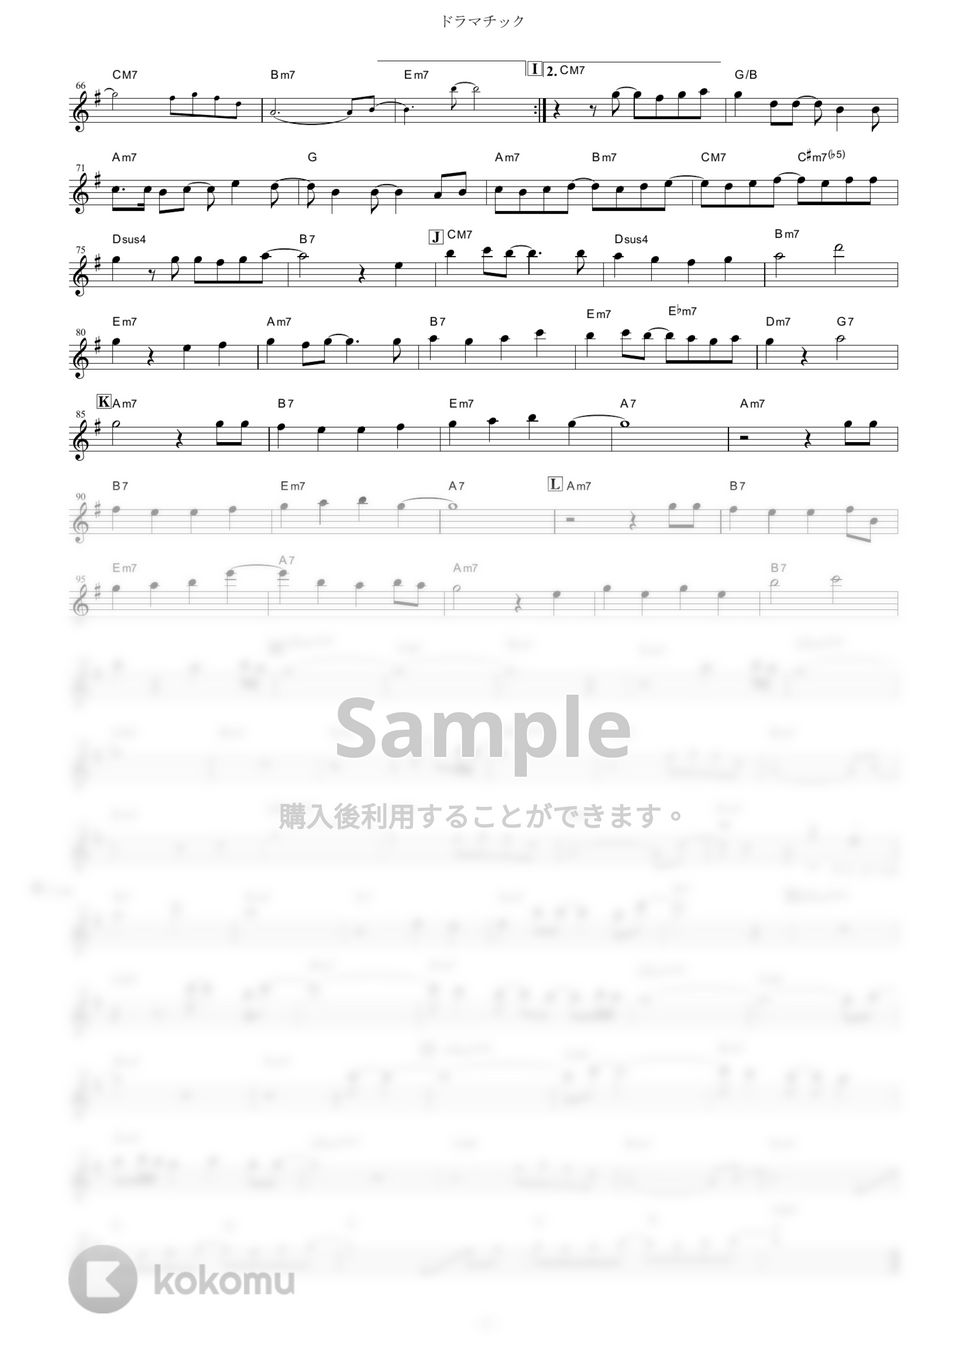 YUKI - ドラマチック (『ハチミツとクローバー』 / in C) by muta-sax